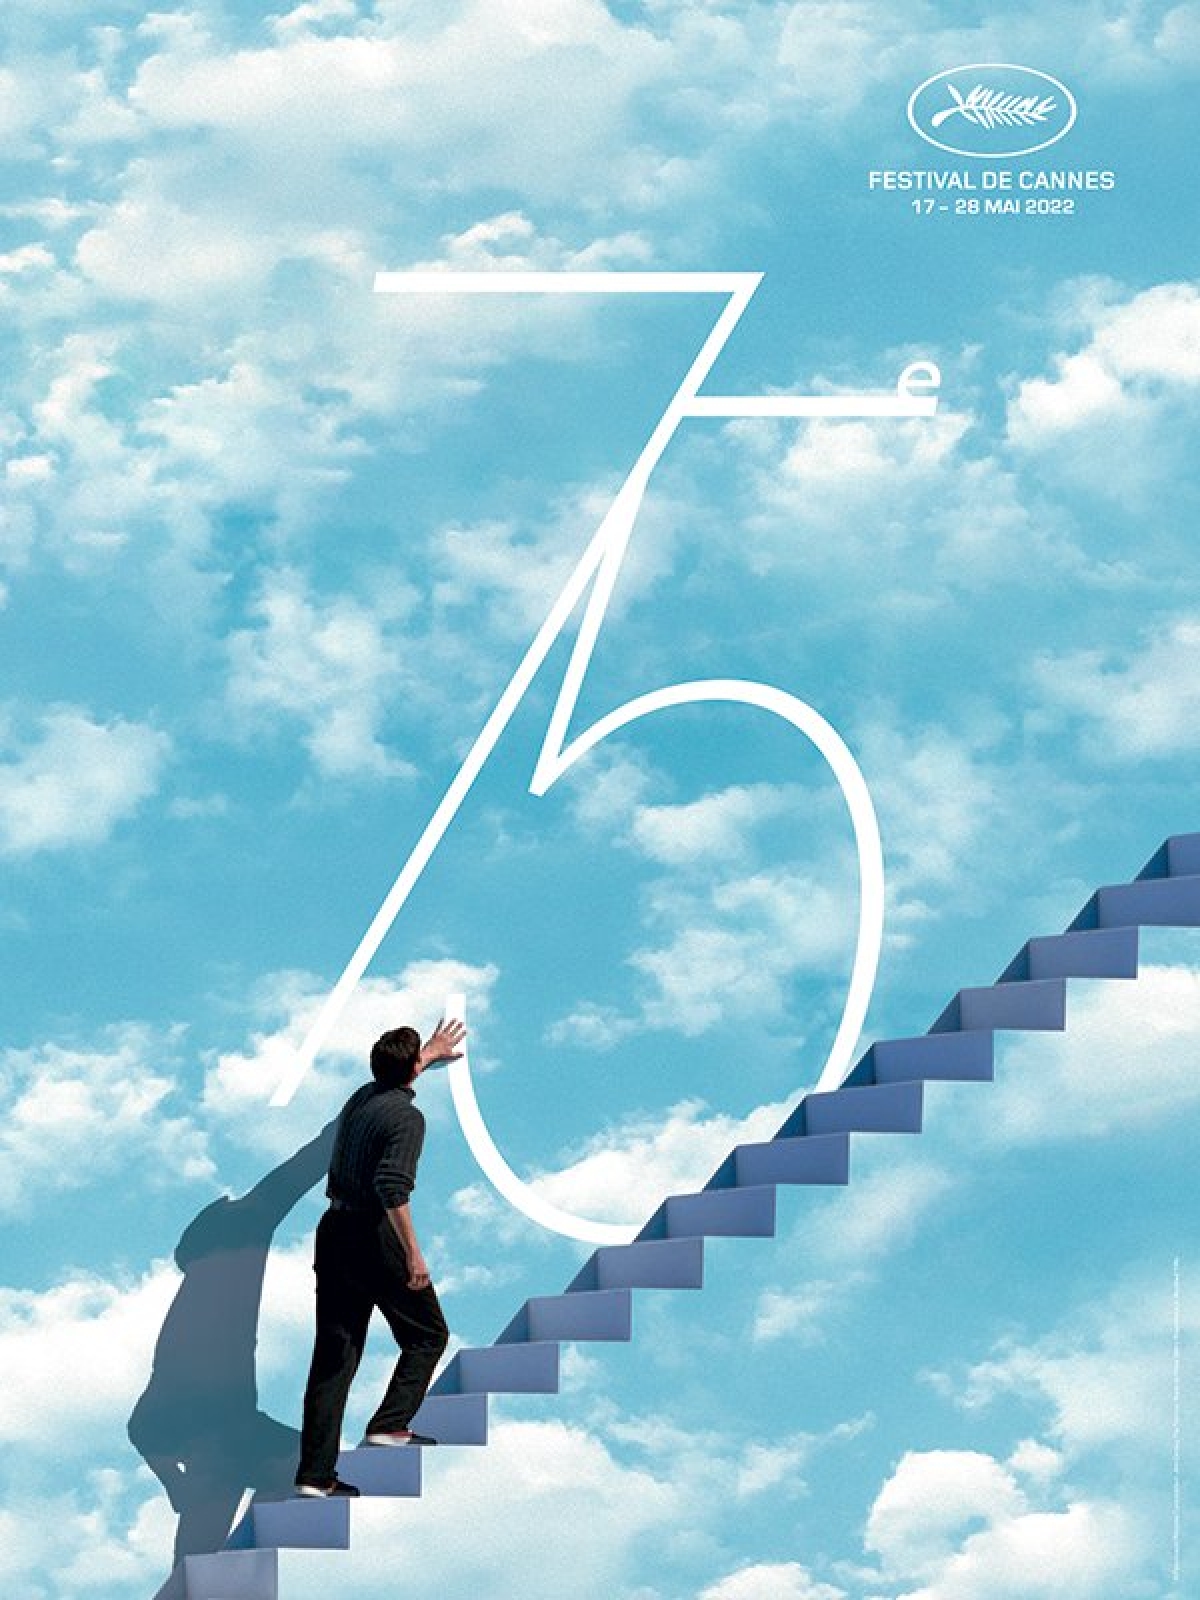 Liên hoan phim Cannes 2022 công bố poster chính thức - Ảnh 1.